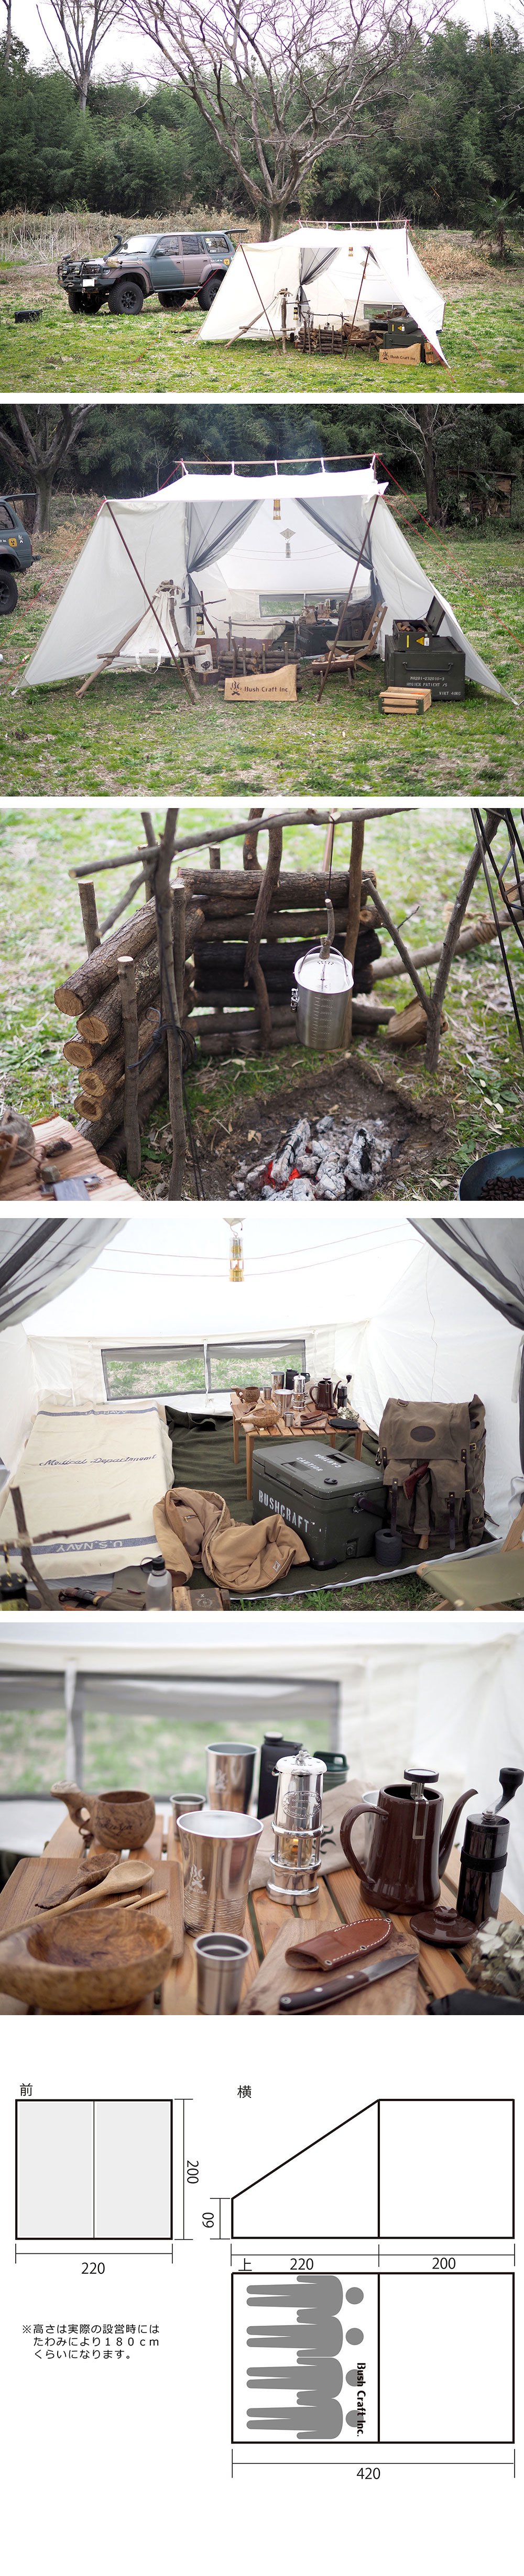 ブッシュクラフターズテント 4人用 キャンプファイヤーテント コットン100%テント アウトドア キャンプ テント Bush Craft